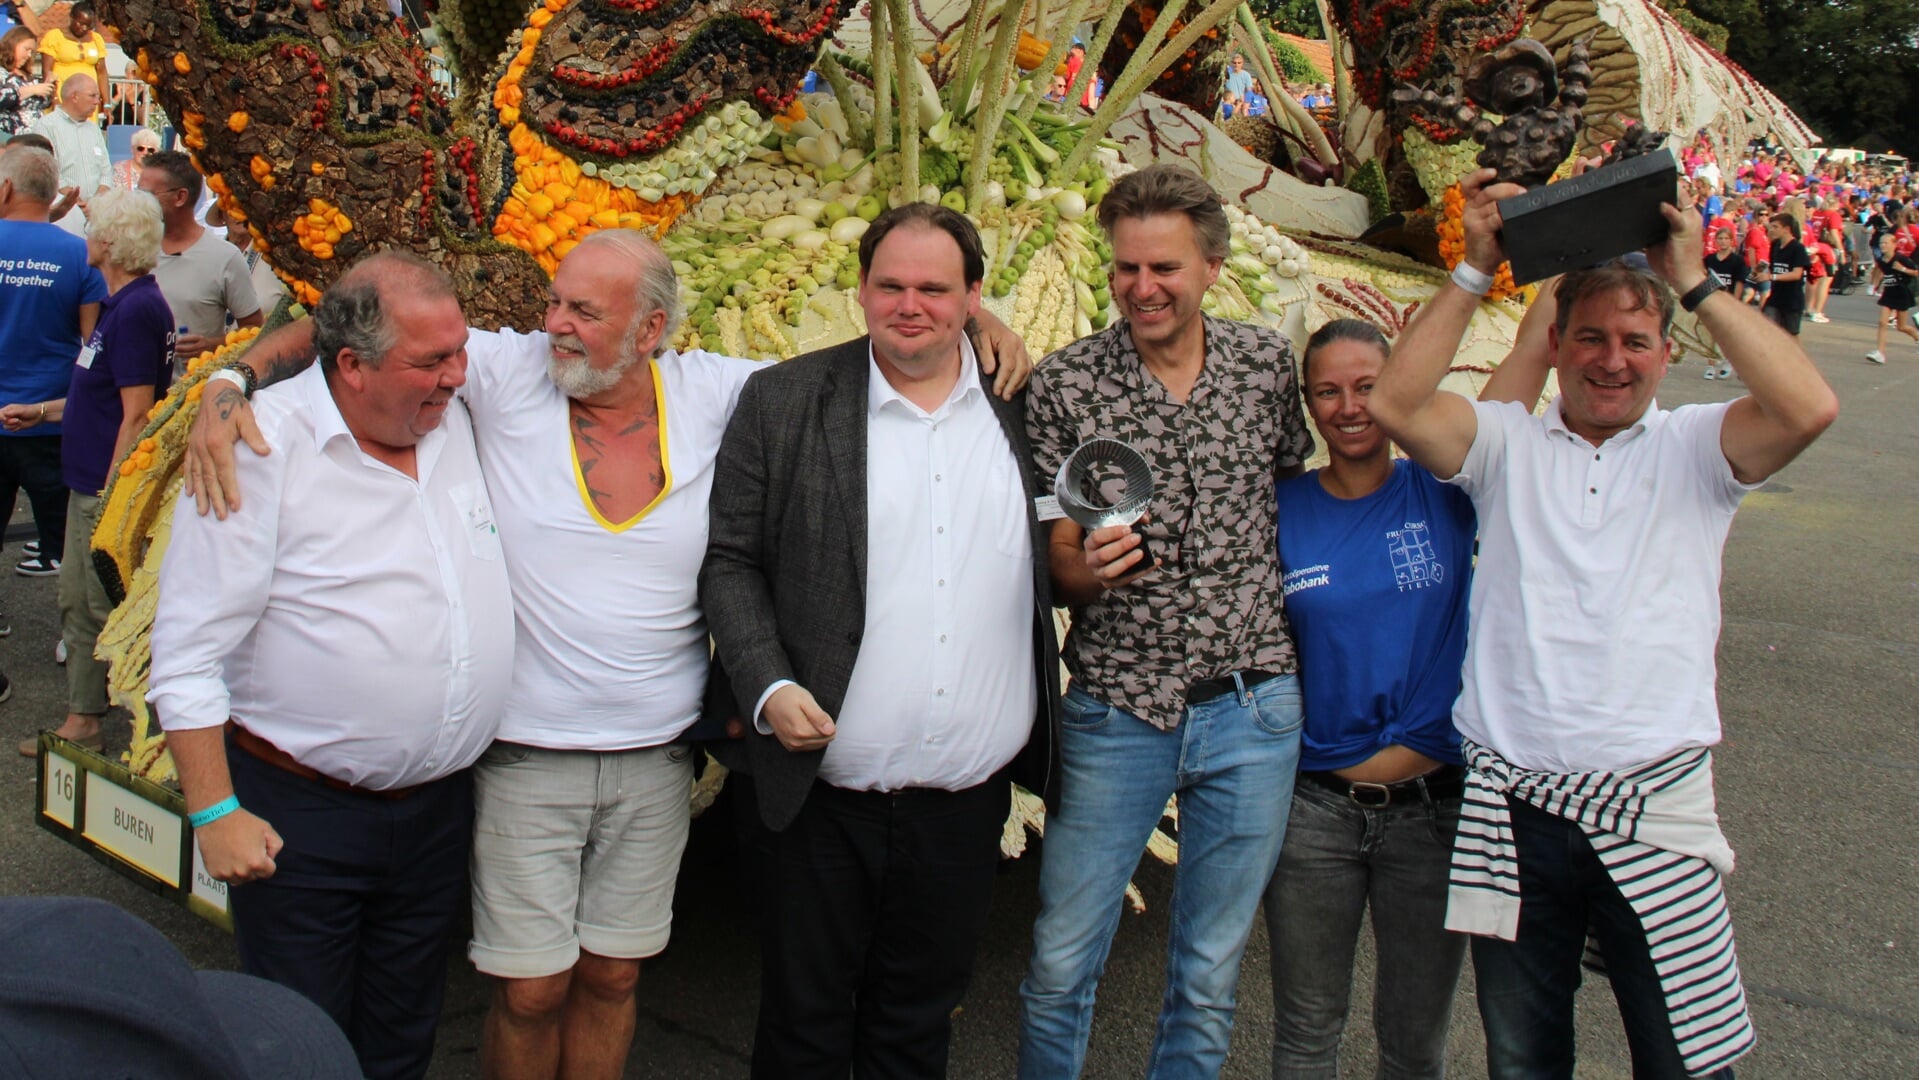 • Buren wint de Lof van de jury én de Teun Luijendijkprijs. Burgemeester Ostendorp (uiterst links) viert het feestje mee, evenals 4-Stromenland-voorzitter Laurens Verspuij (derde van links).